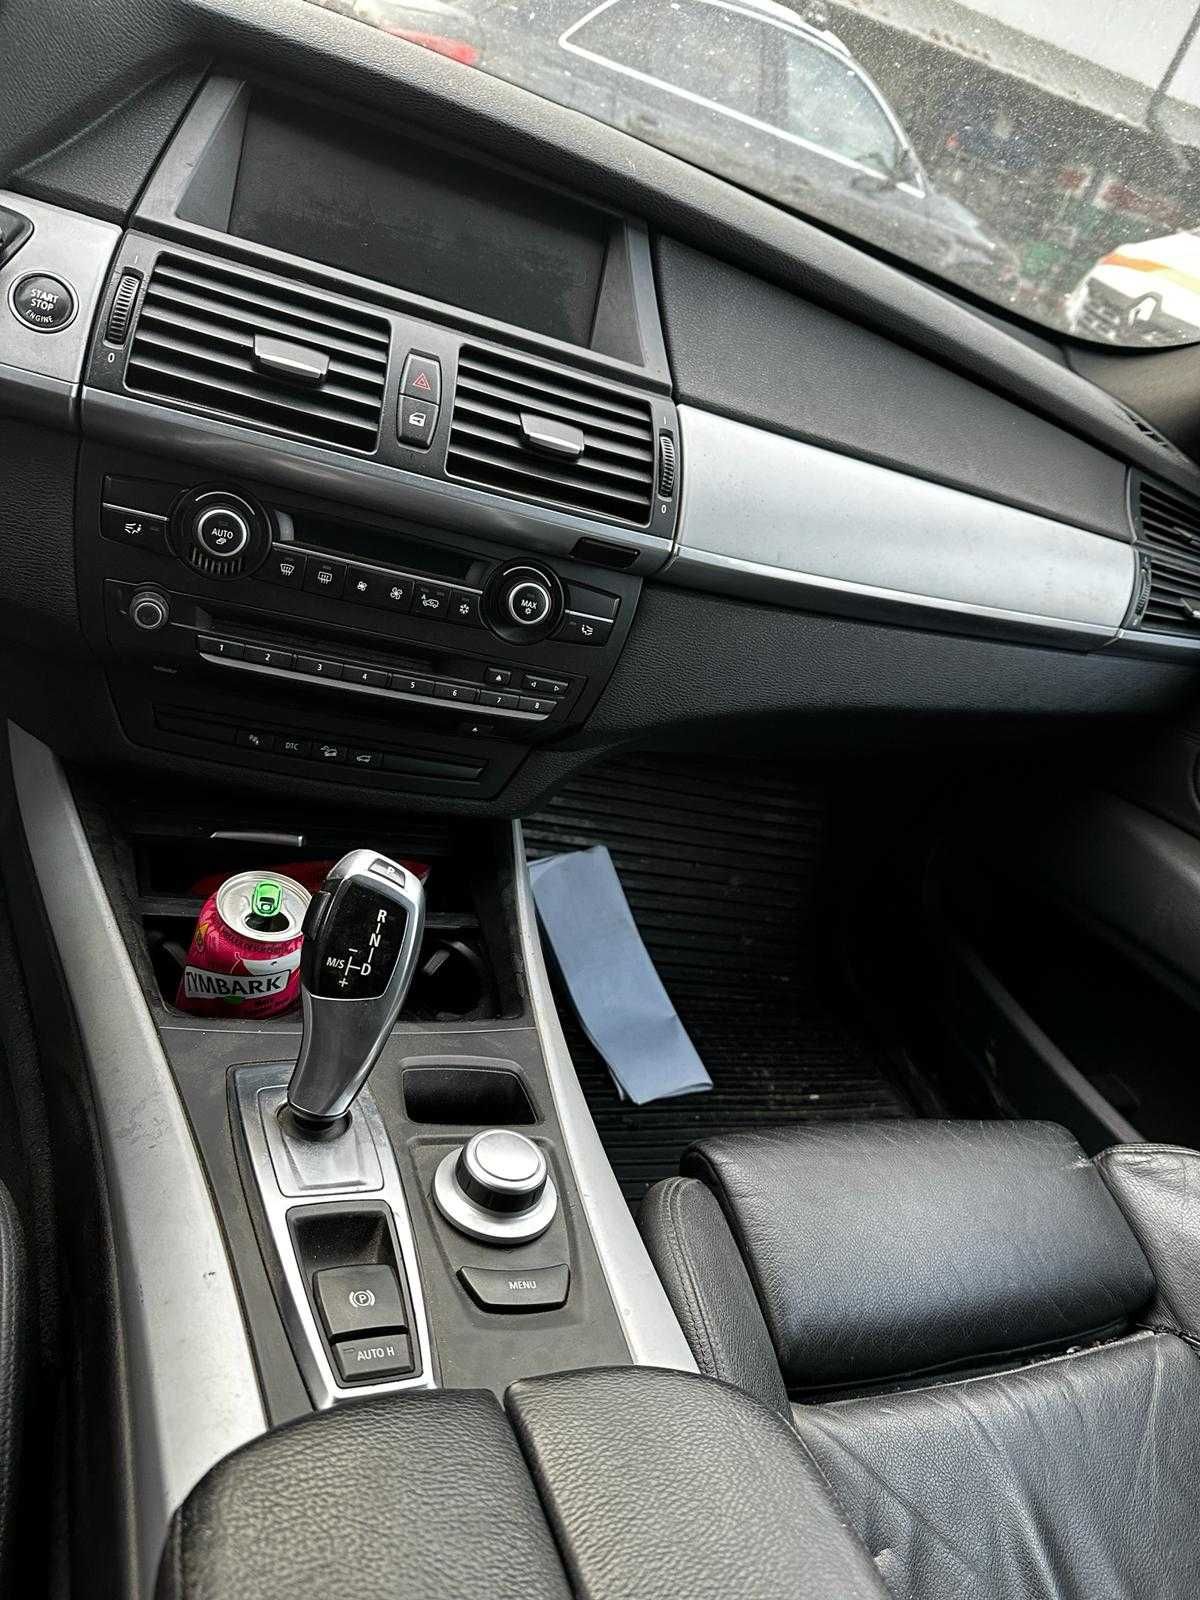 Display navigatie mare cu unitate BMW X5 E70 2008 3.0